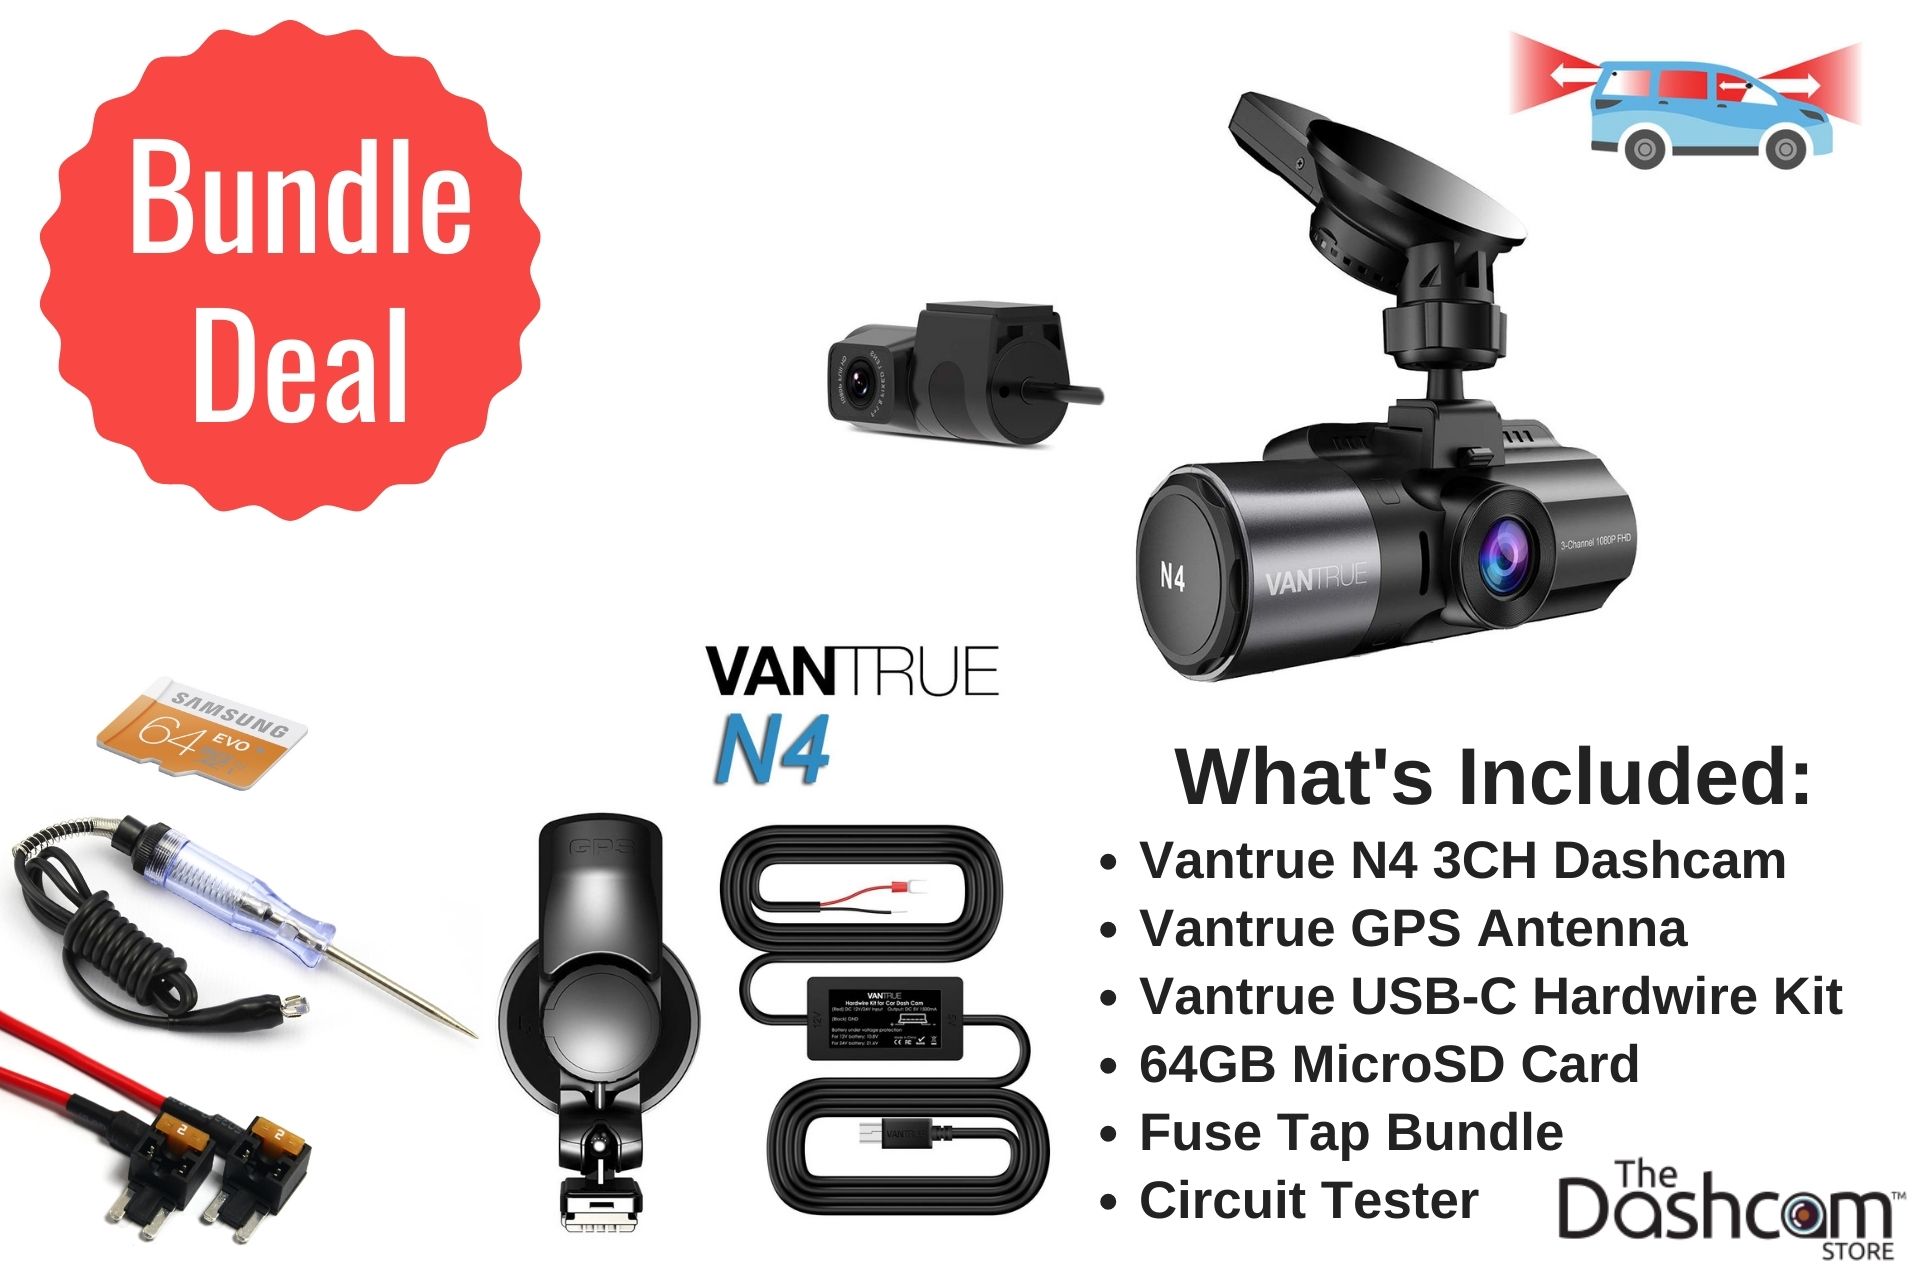 Vantrue OnDash N4 dash cam hands-on: Three-channel camera with